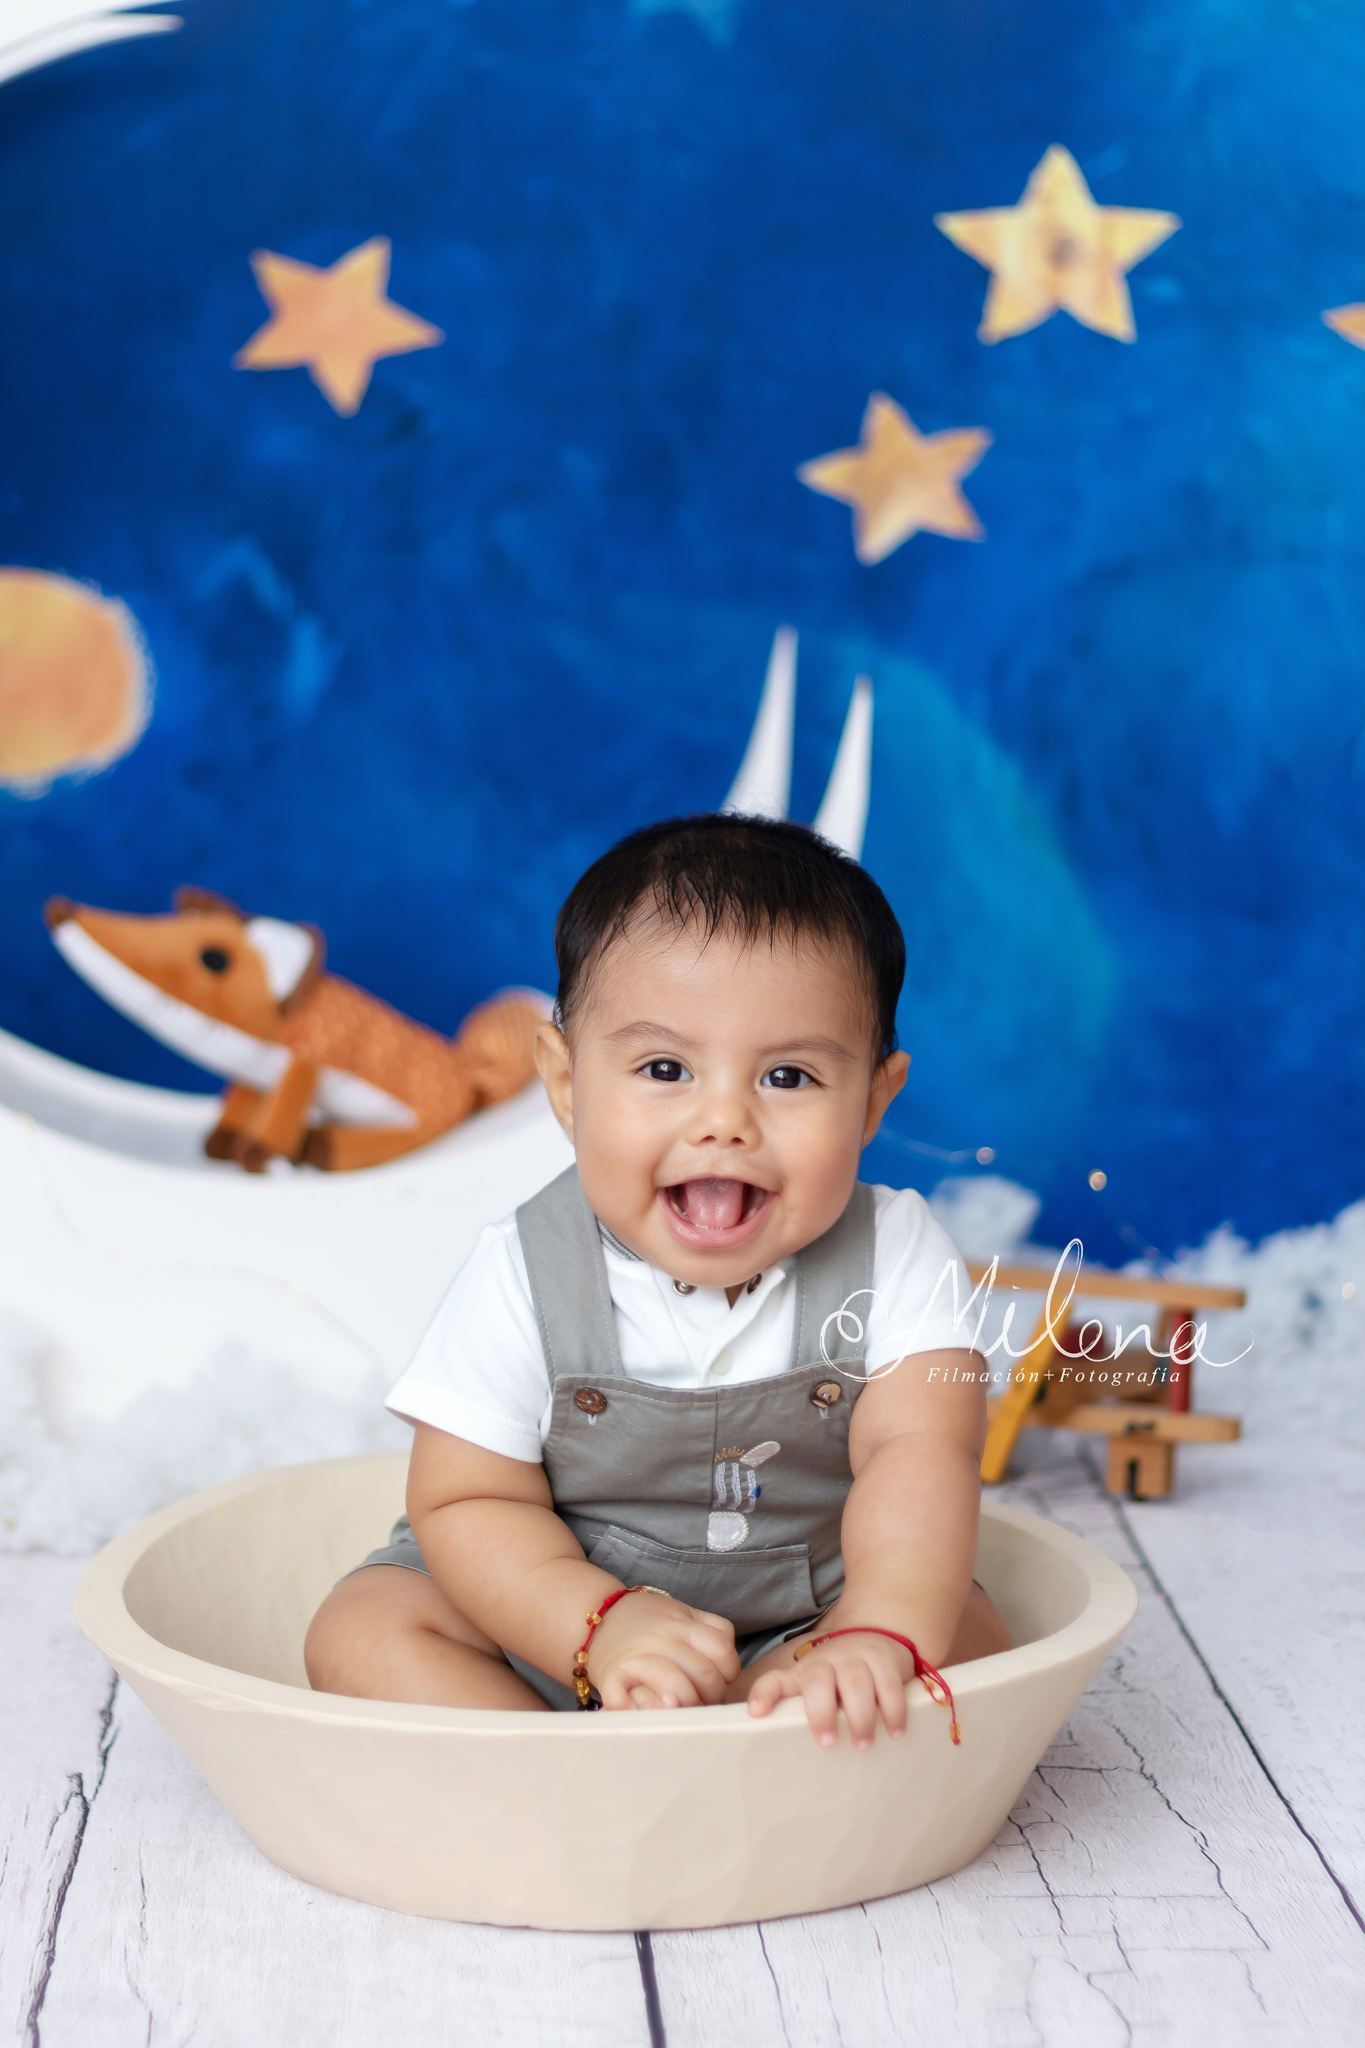 Sesión fotográfica bebé 6 meses en estudio  El principito – Milena  Filmación + Fotografía